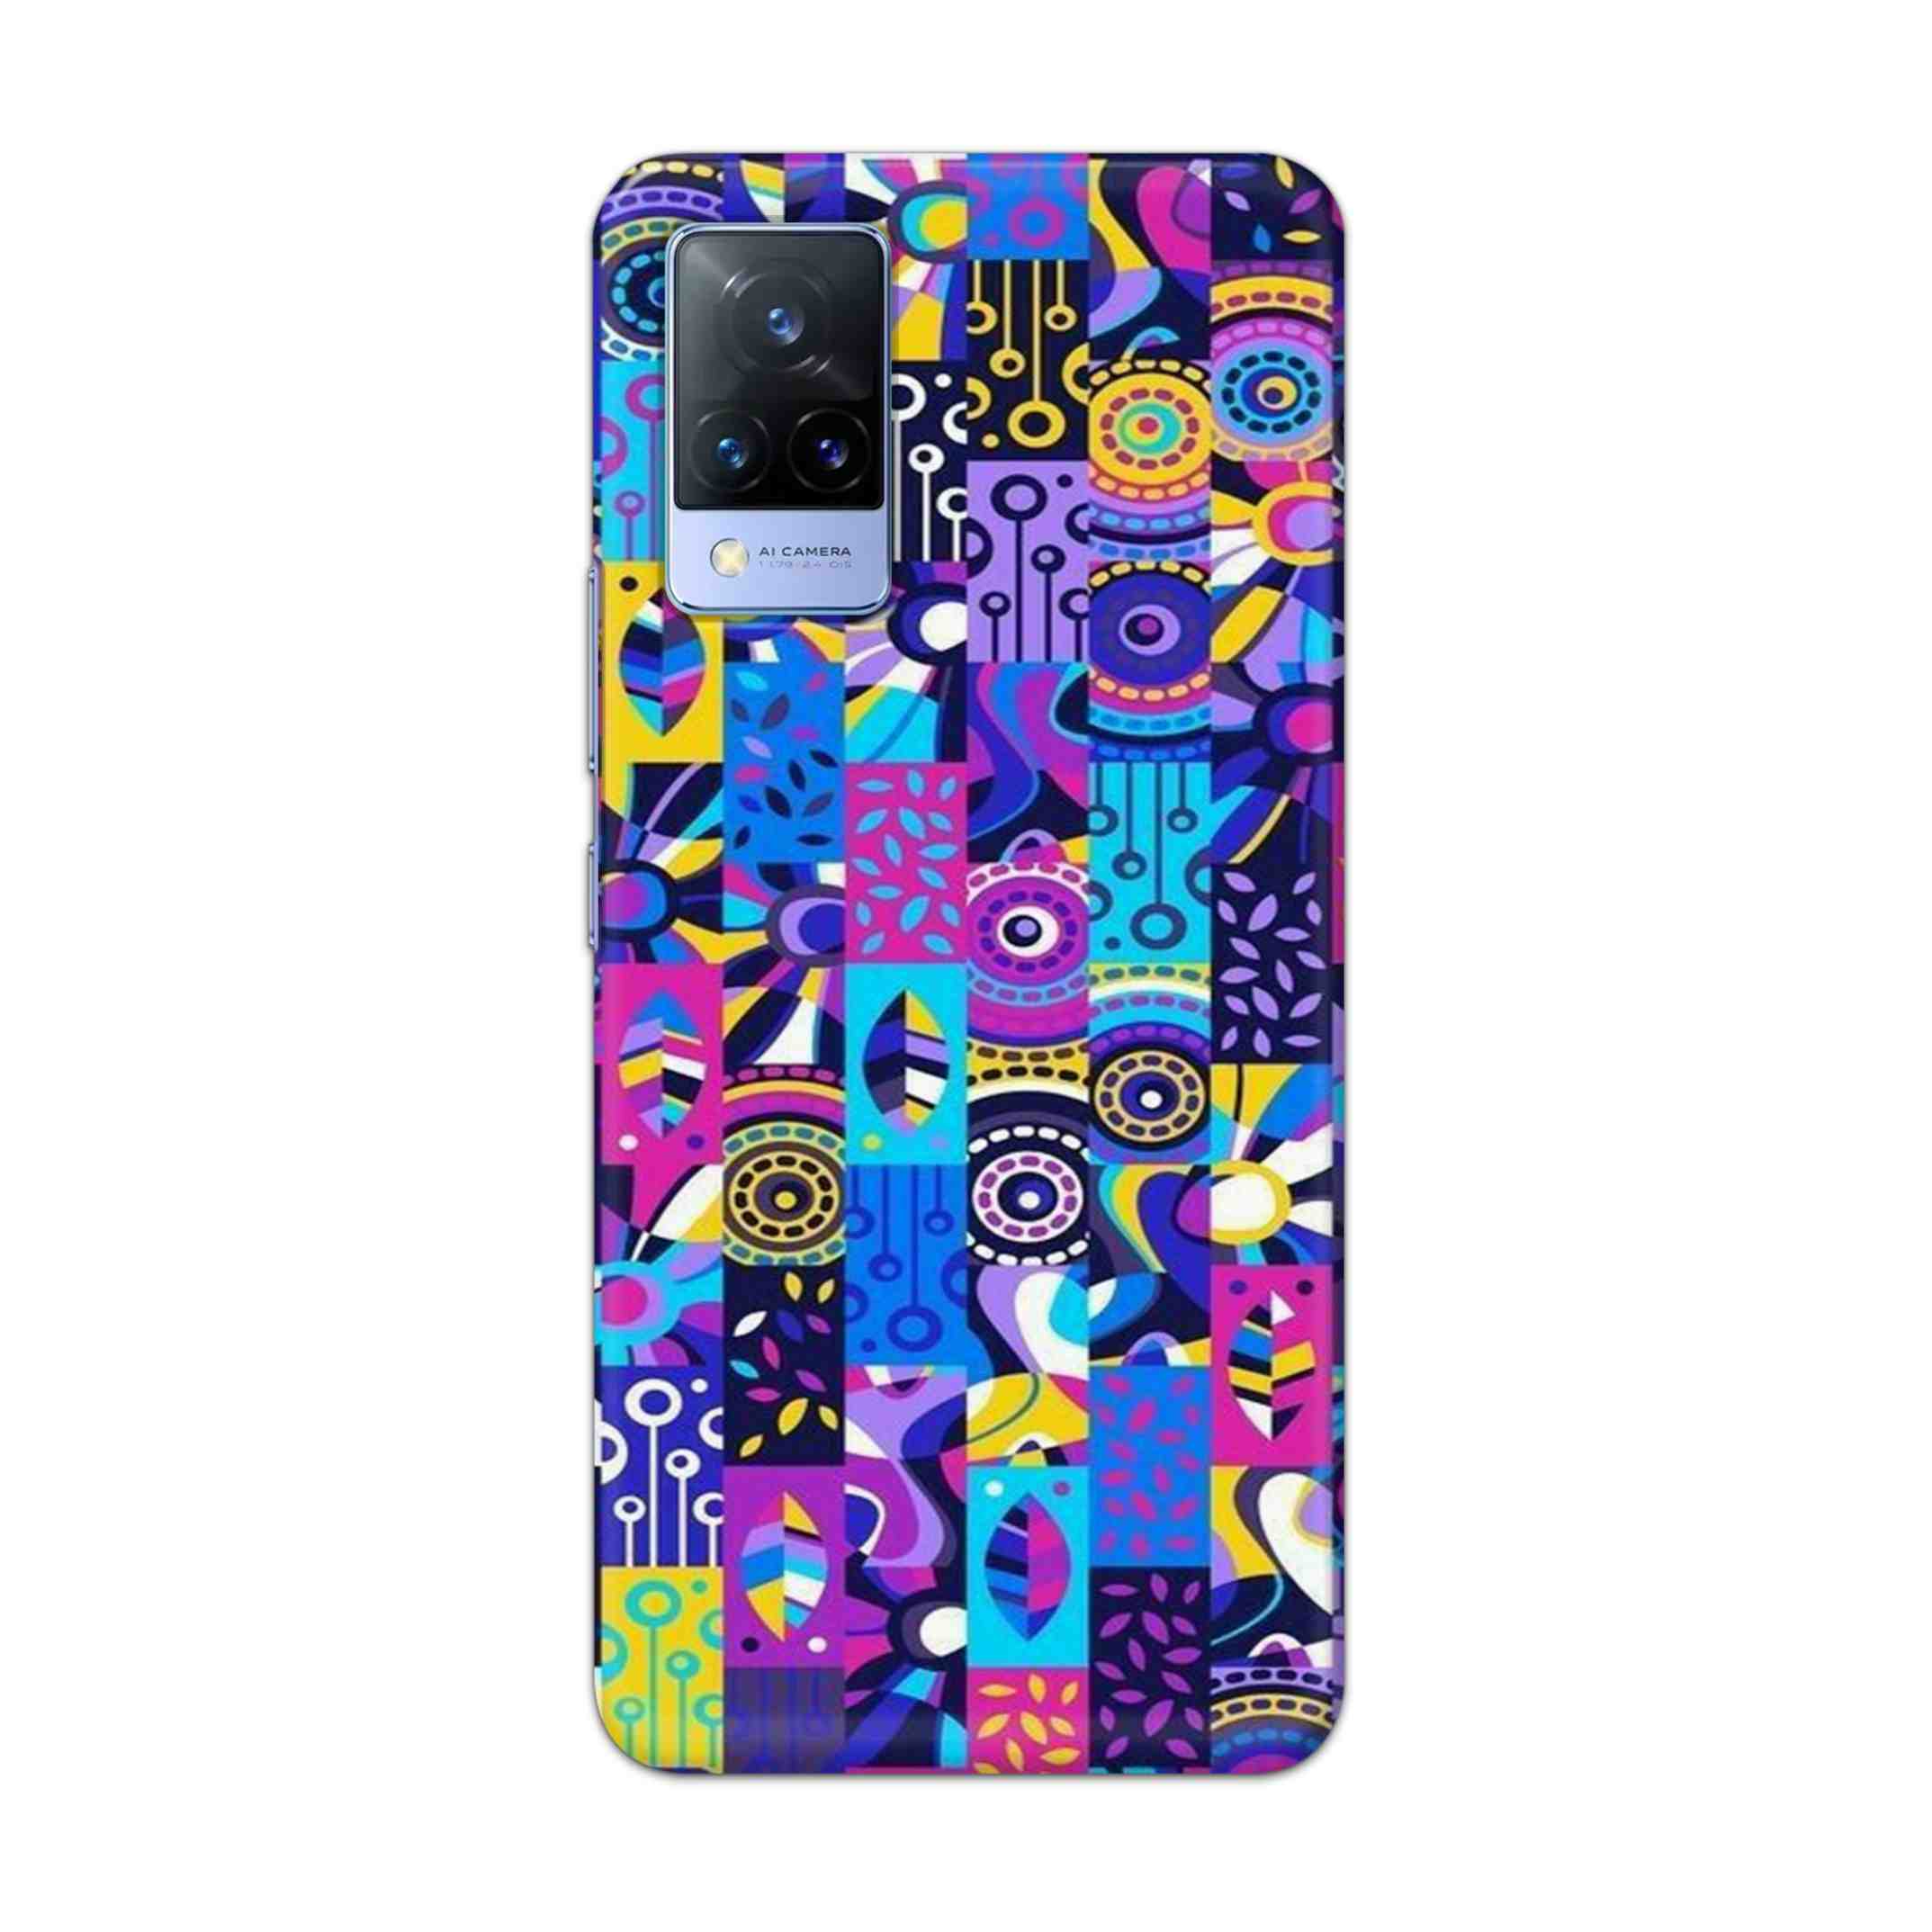 Buy Rainbow Art Hard Back Mobile Phone Case Cover For Vivo V21e Online